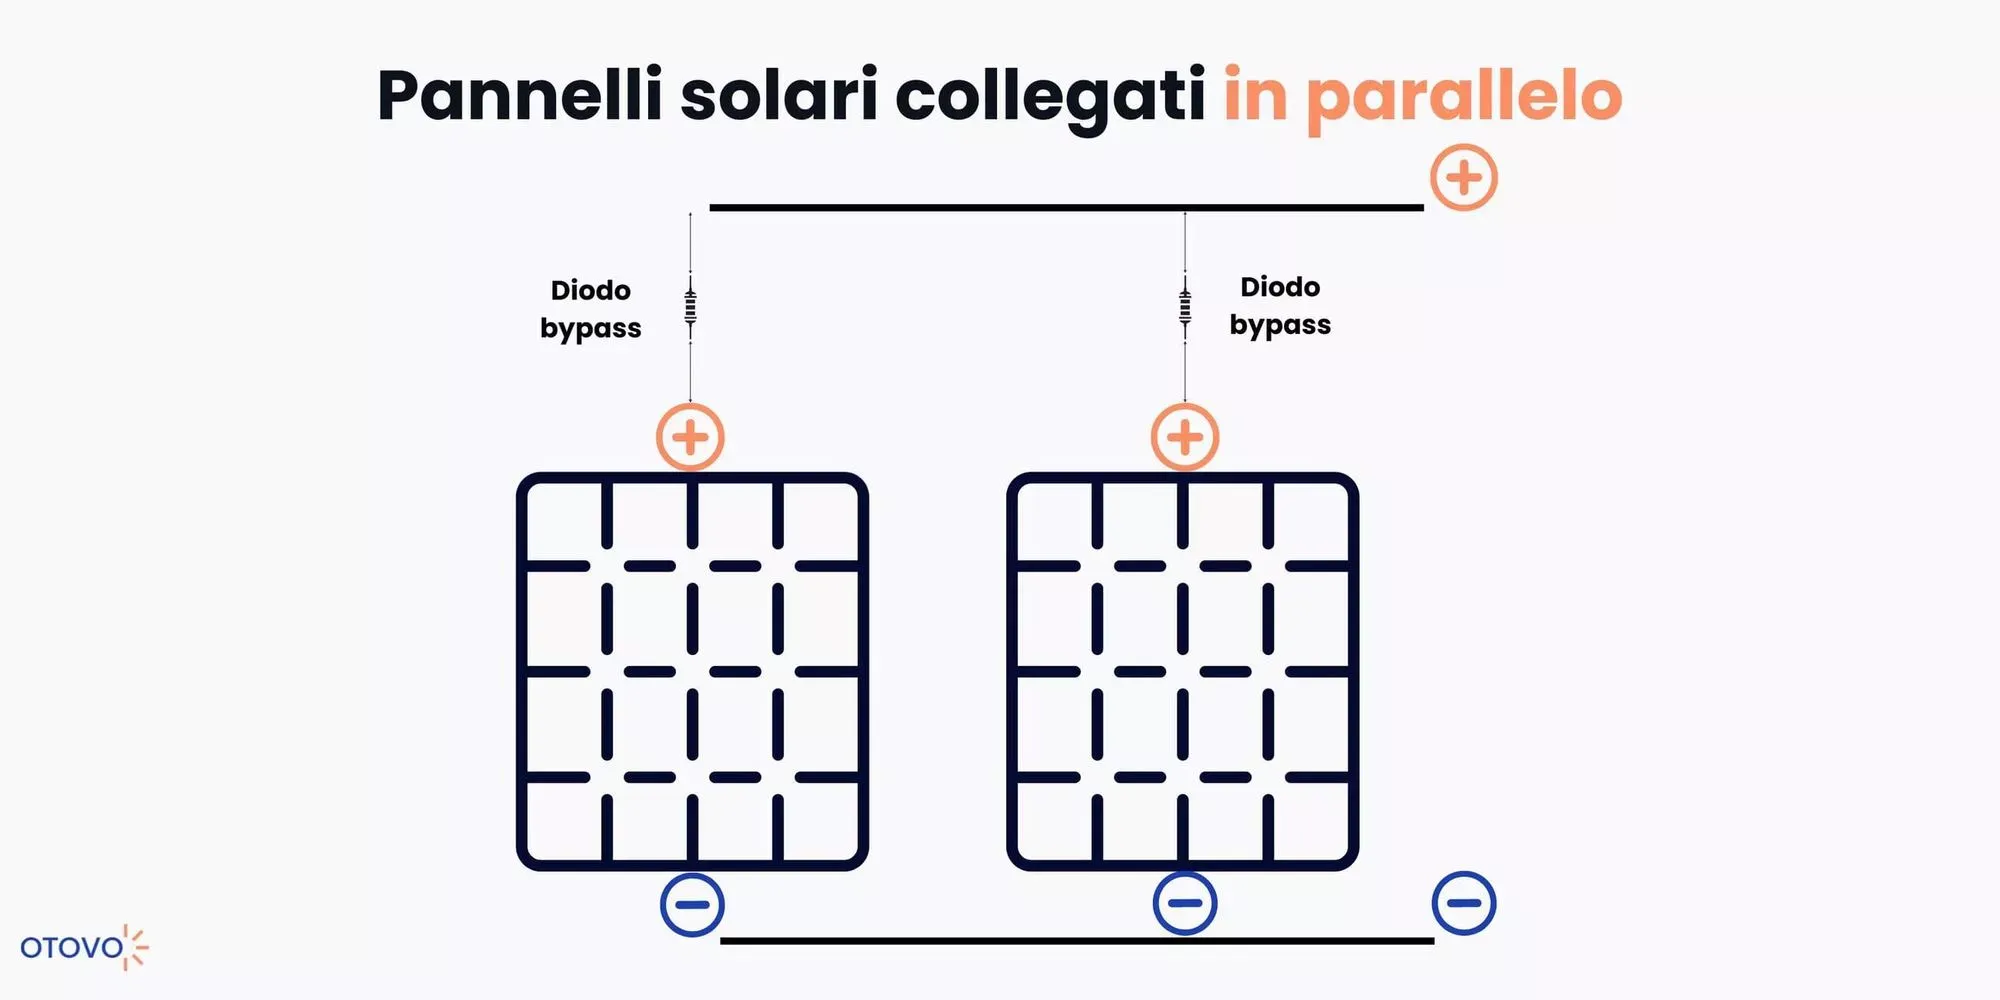 Pannelli solari collegati in parallelo